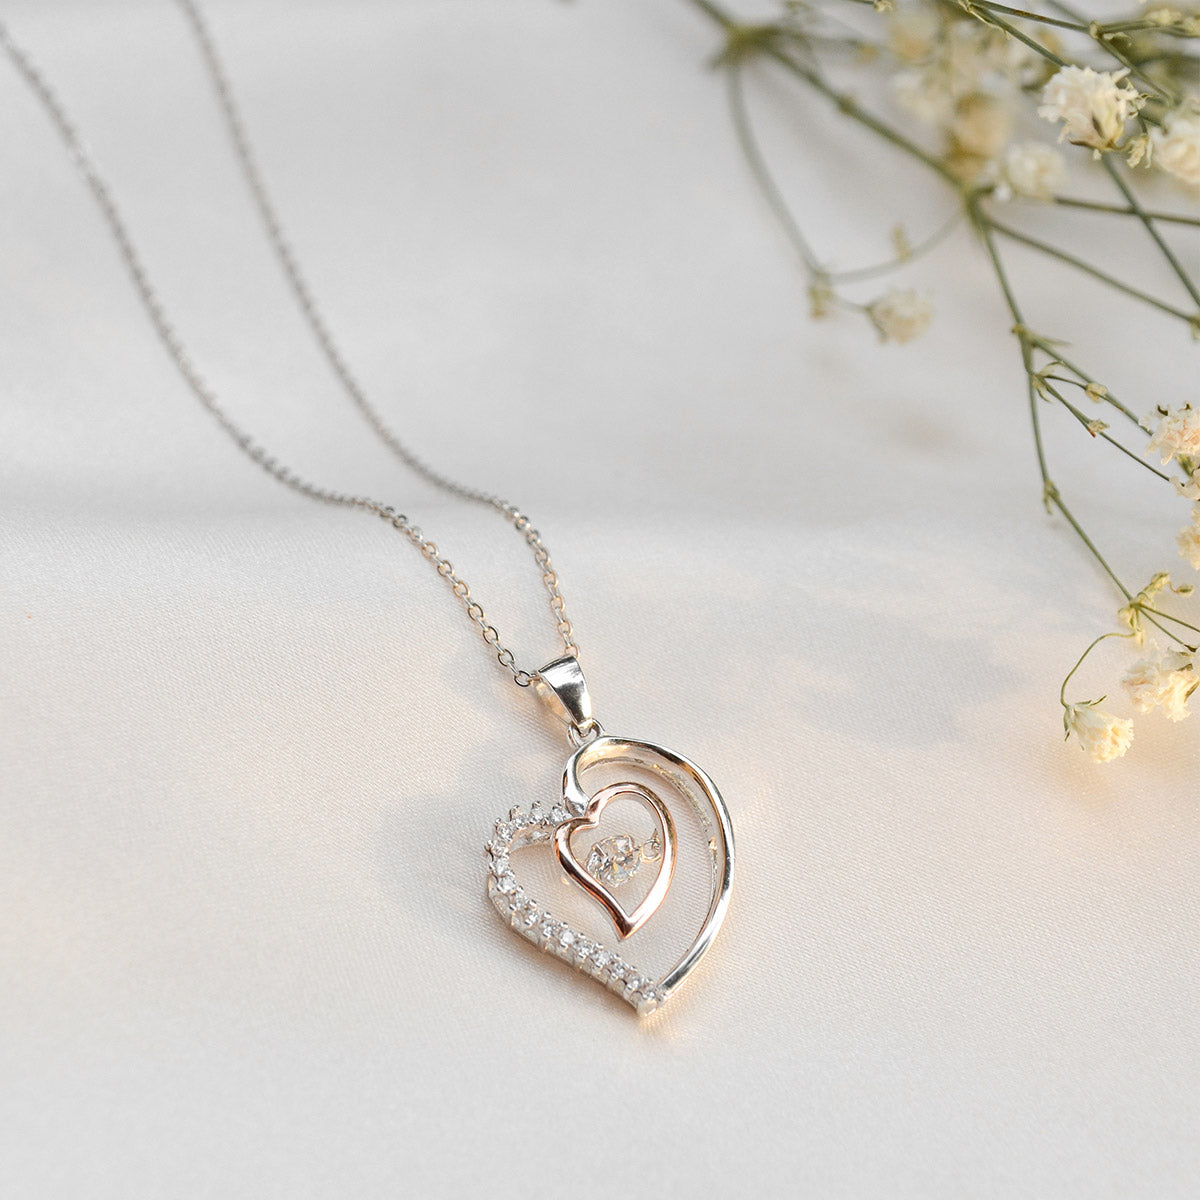 BUY 1 GET 1 FREE To My Badass Bestie - Luxe Heart Necklace Gift Set